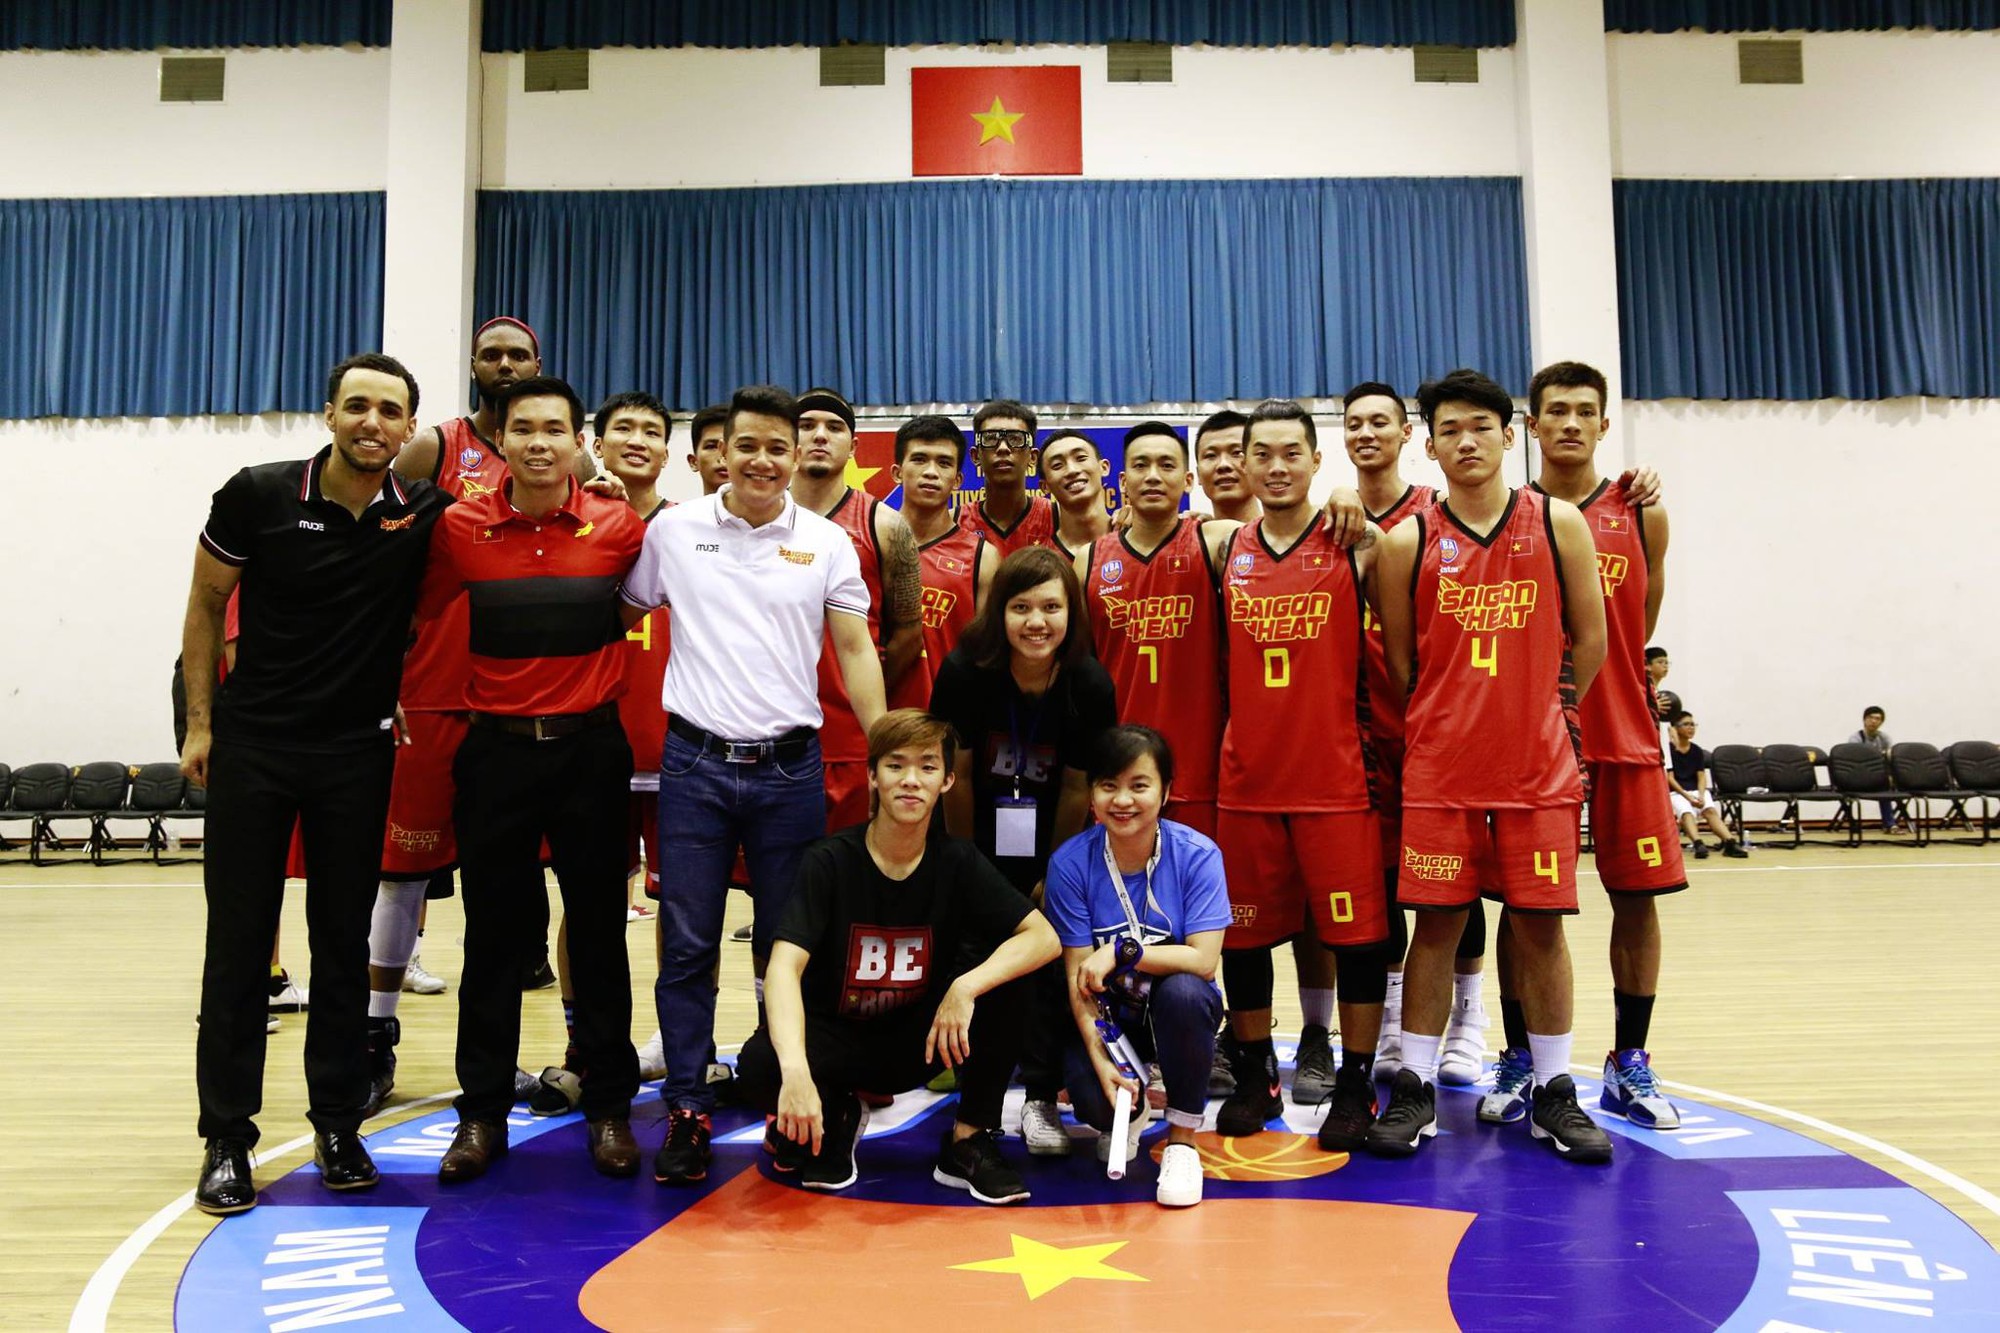 HLV từng đưa Saigon Heat vô địch Việt Nam gặt hái thành công ở Indonesia- Ảnh 3.